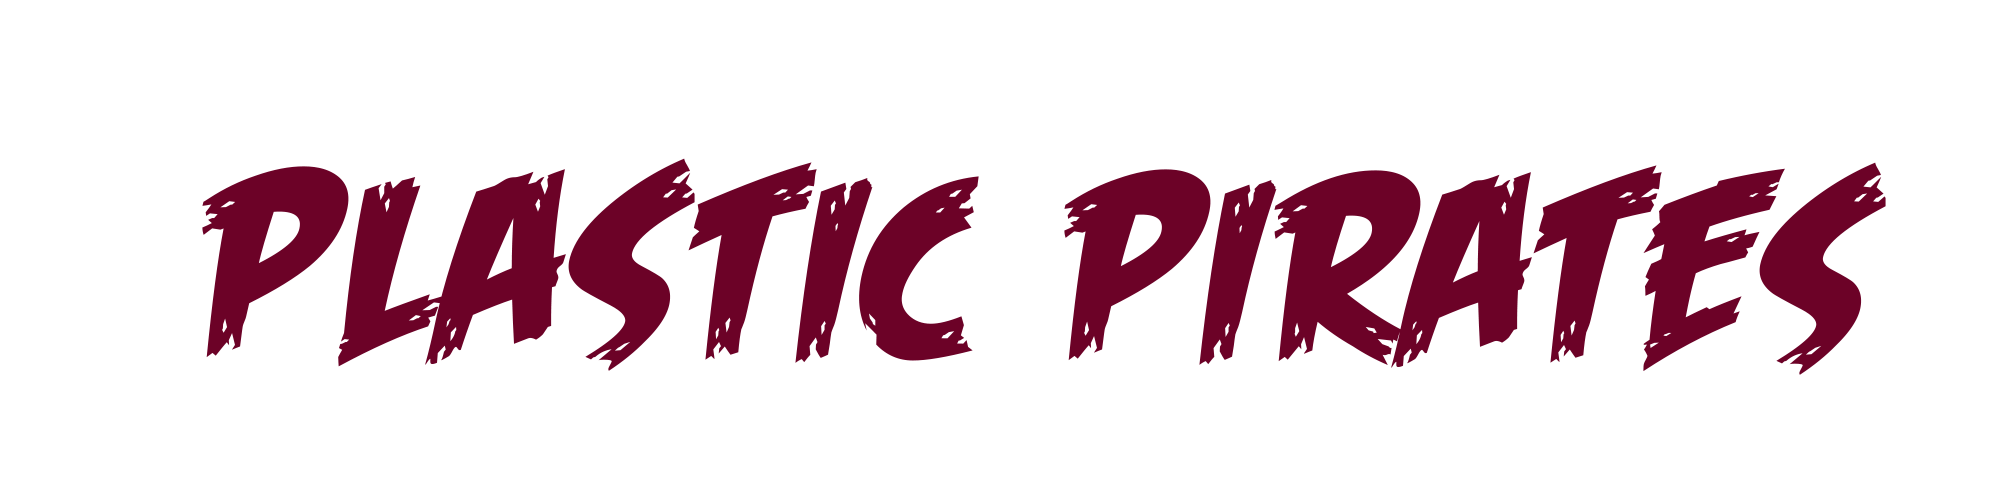 Plastic Pirates - UKIE Game Jam 2019